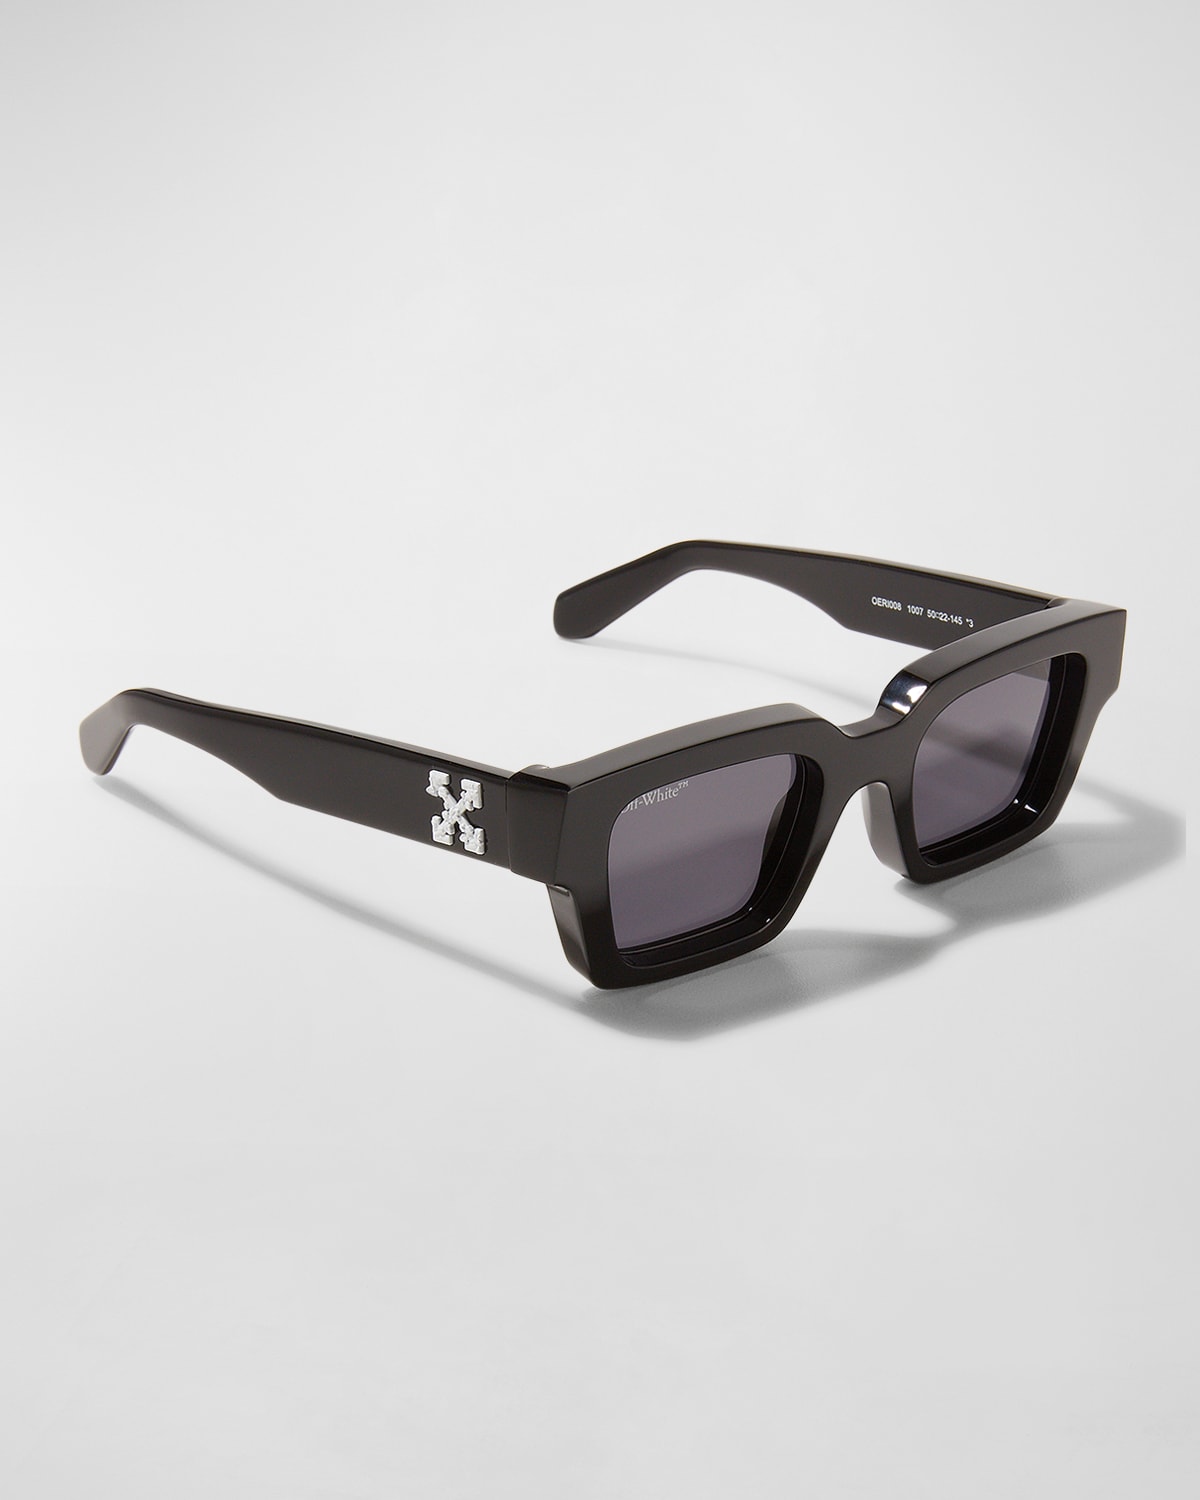 Off-White Sunglasses for Men